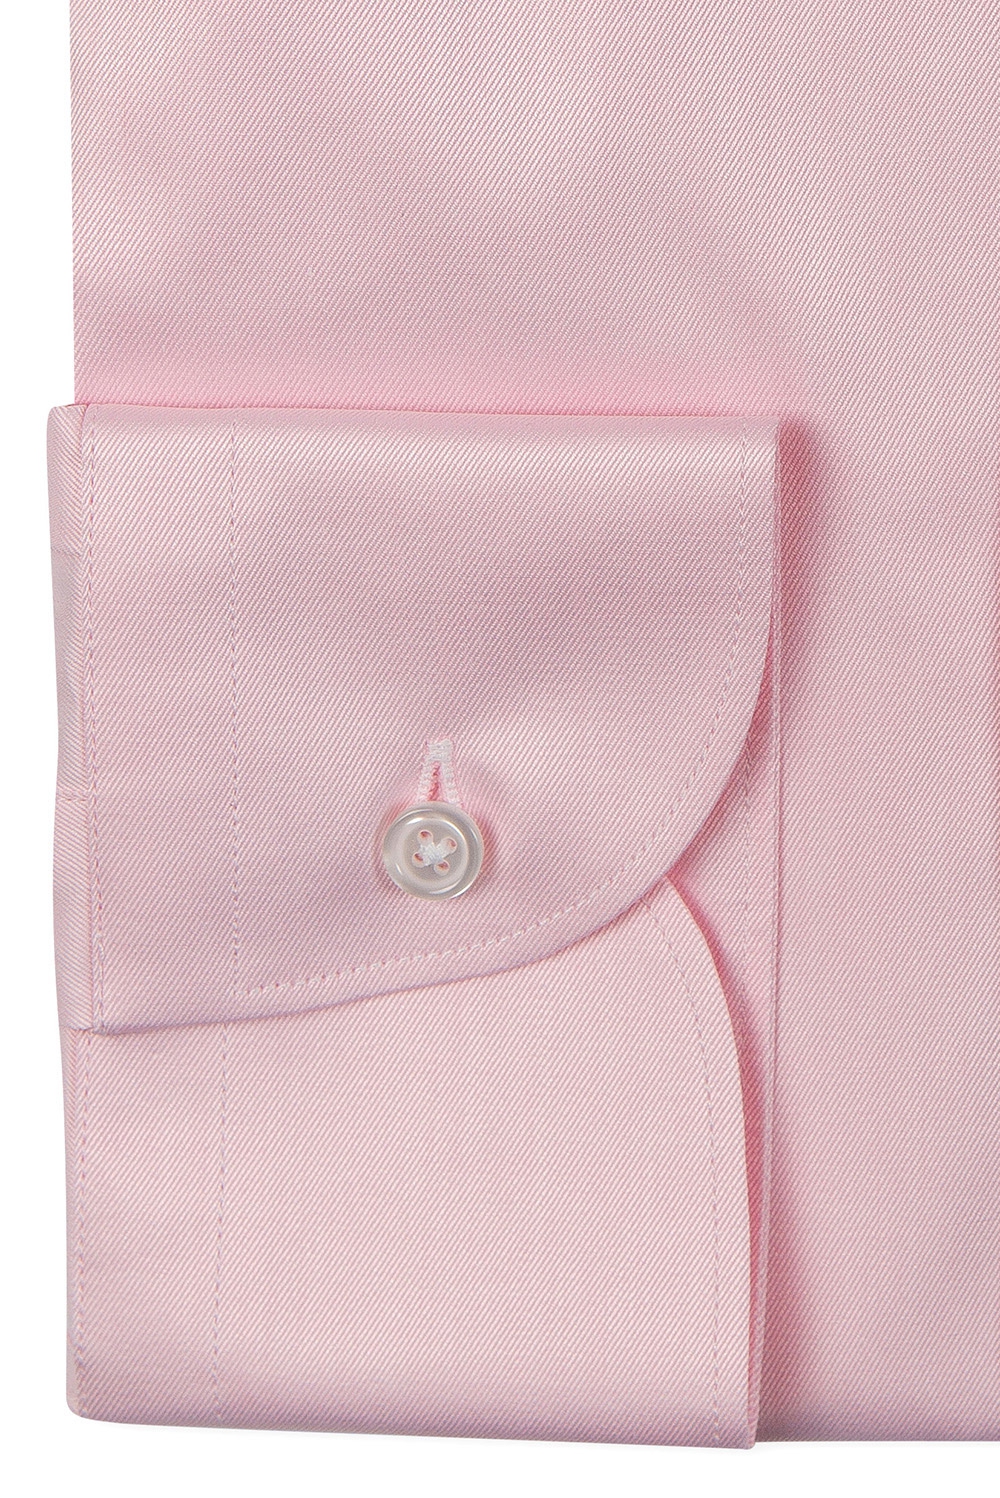 Camasa shaped roz uni 2